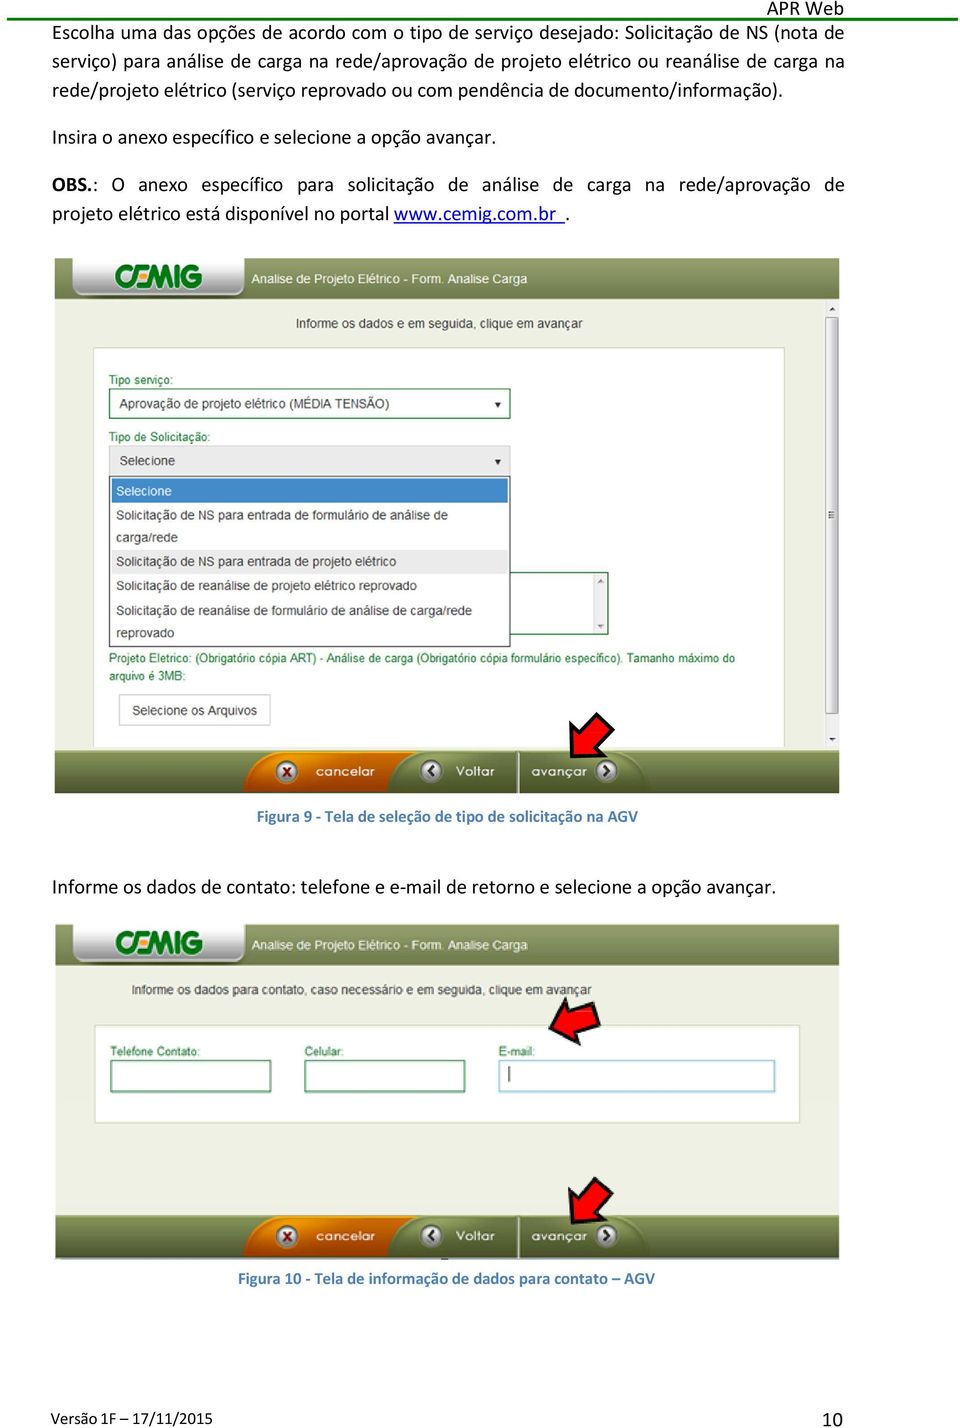 : O anexo específico para solicitação de análise de carga na rede/aprovação de projeto elétrico está disponível no portal www.cemig.com.br.